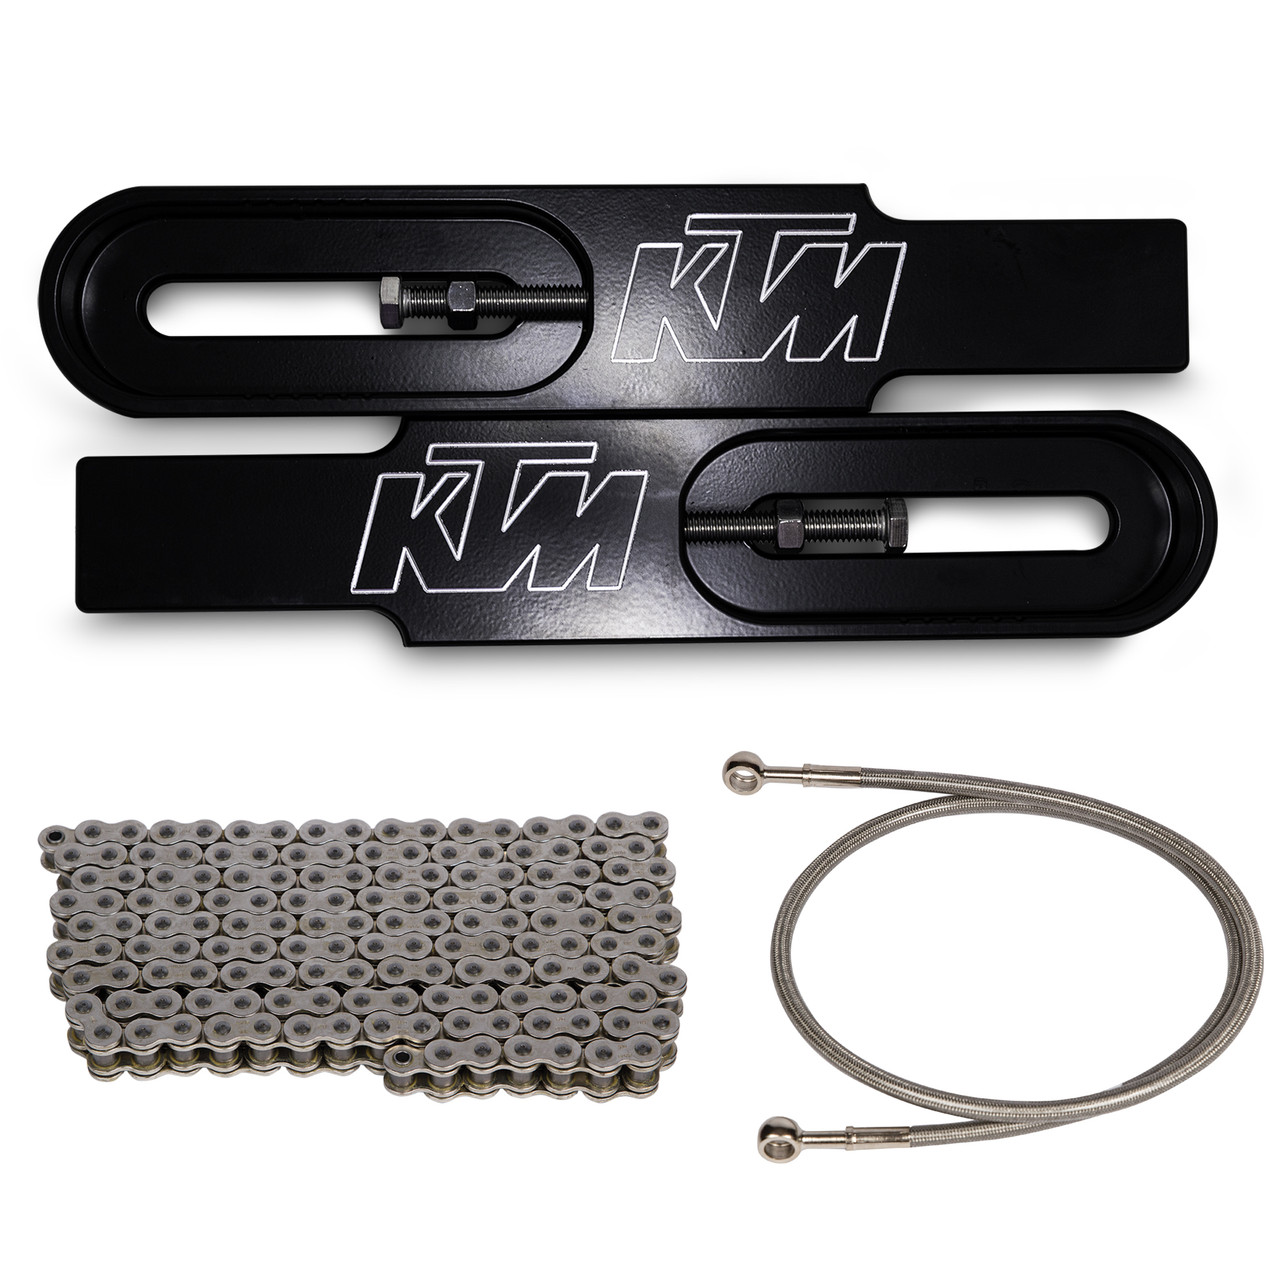 KTM 690 Duke Swingarm Extensions - Black Finish - Engraved - Kit